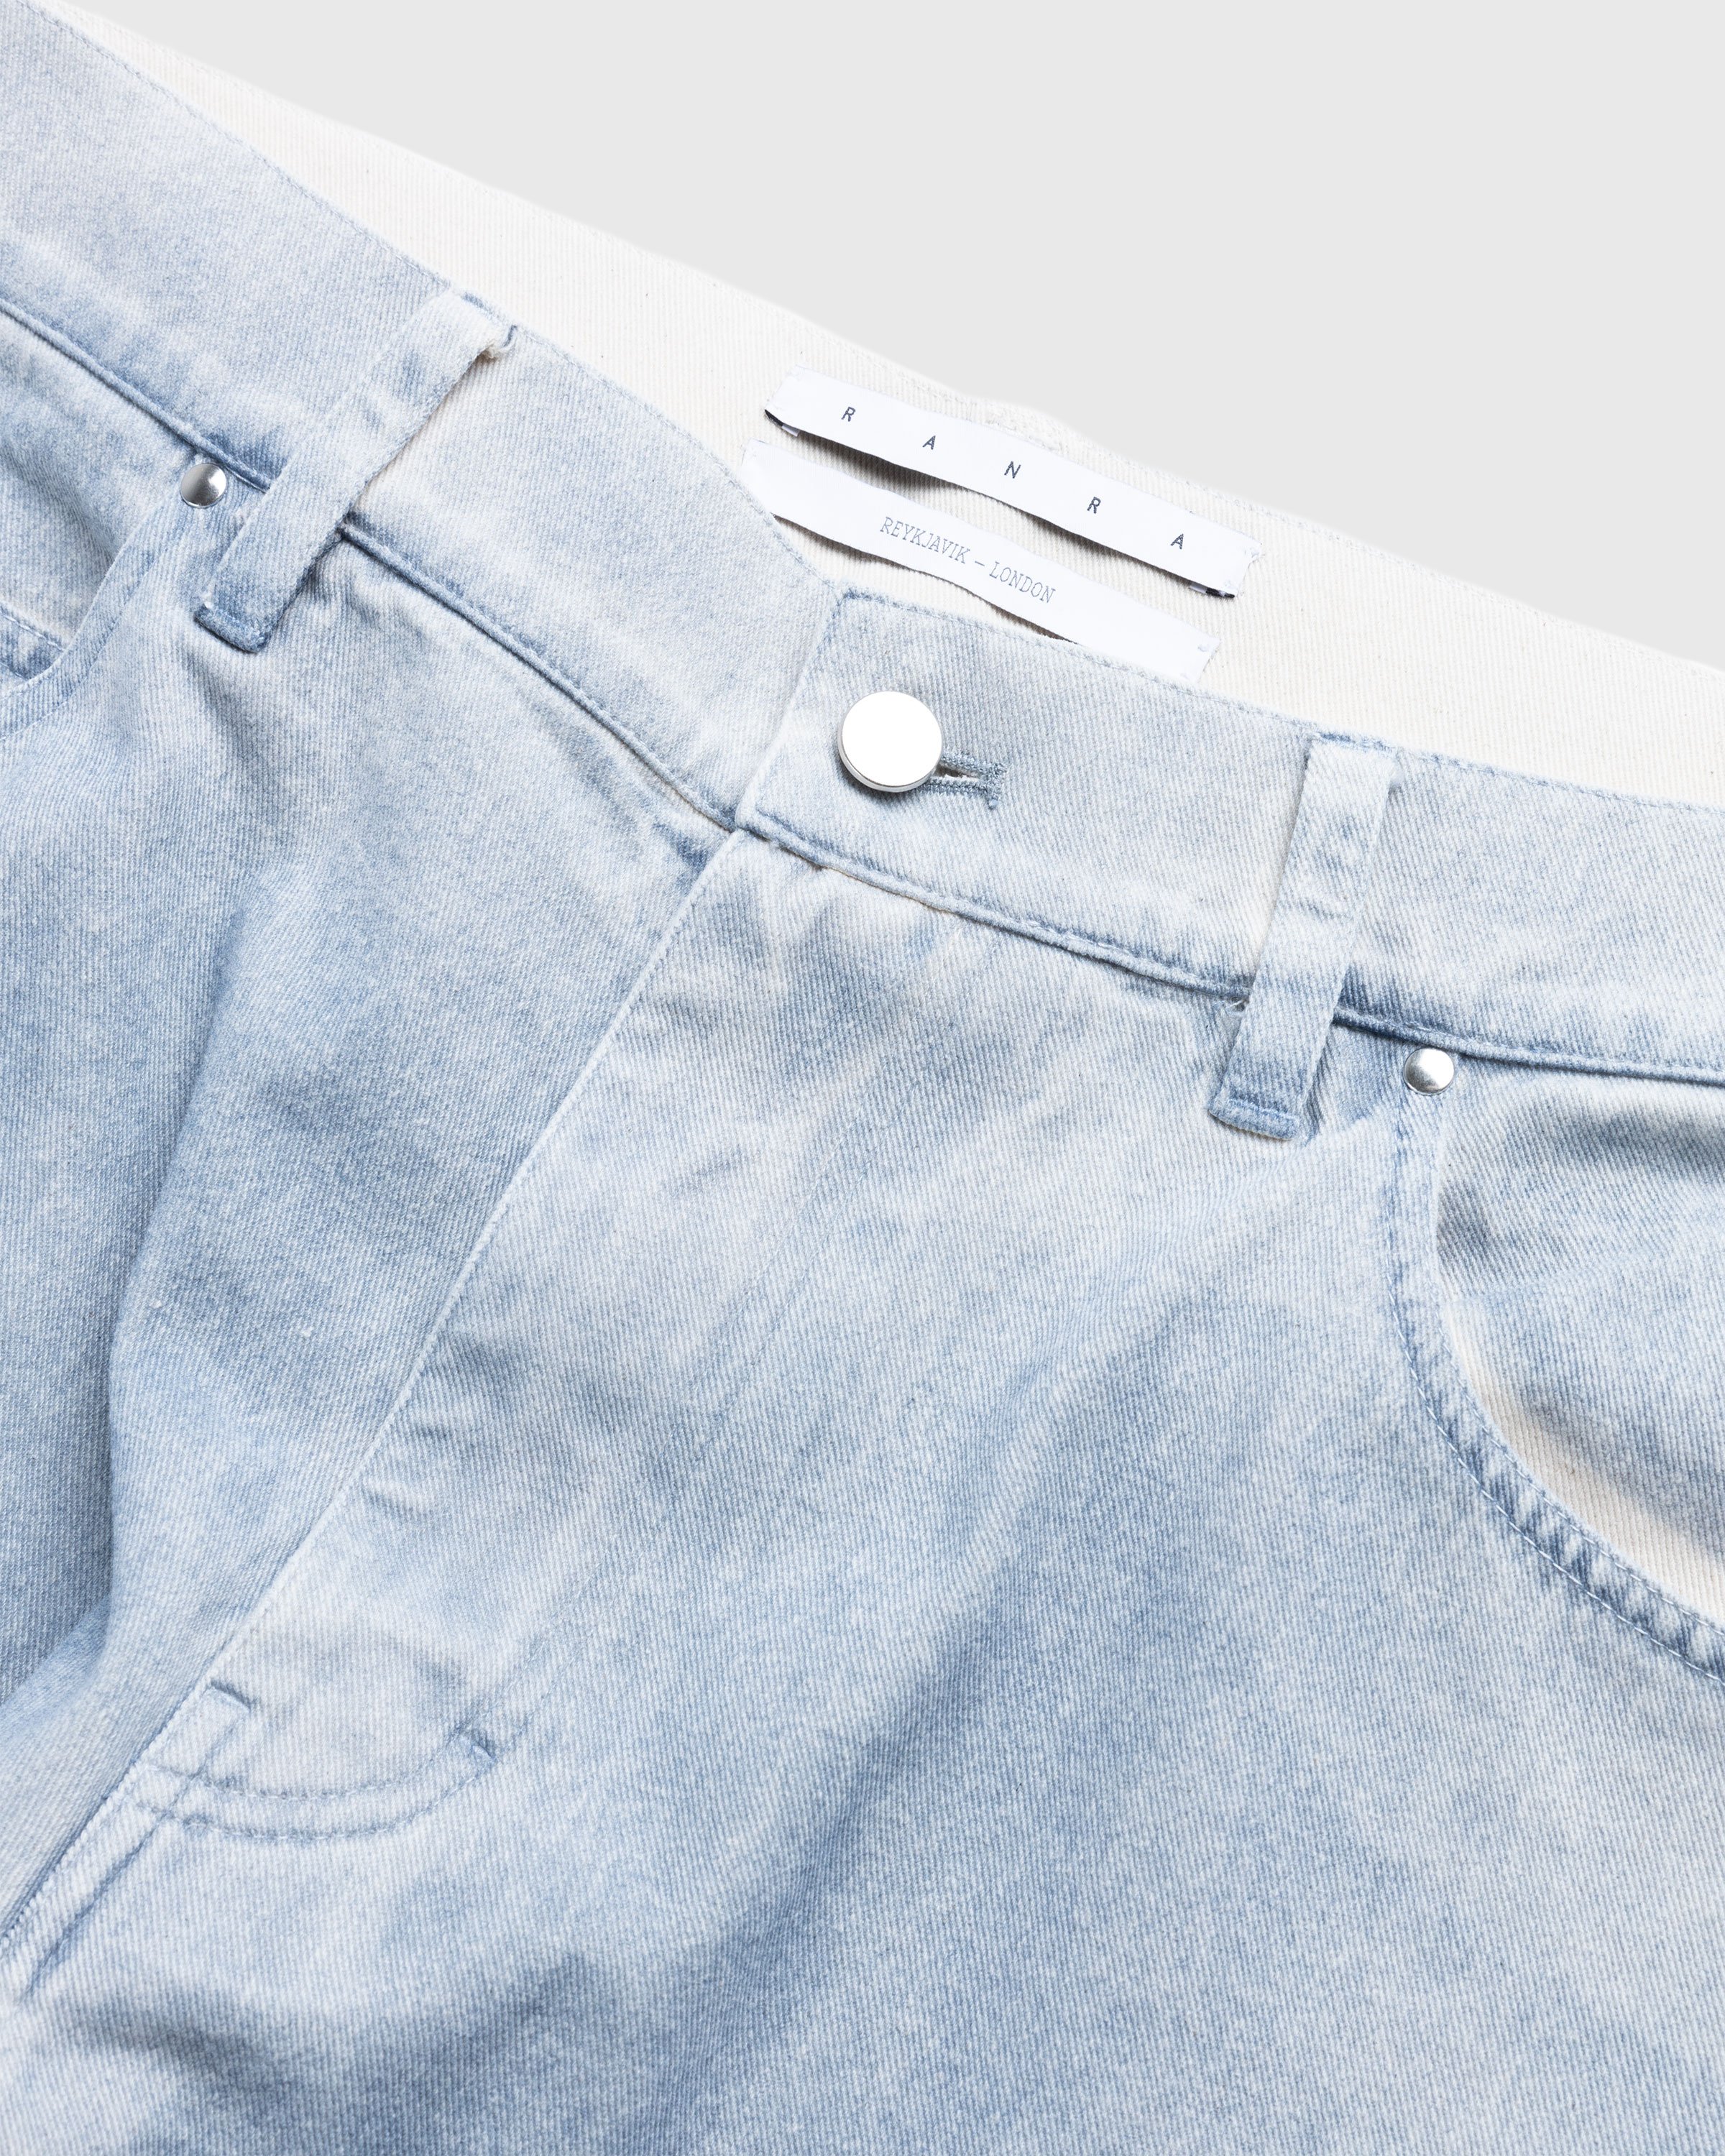 RANRA - Mokollur Jeans Washed Indigo - Clothing - Blue - Image 5